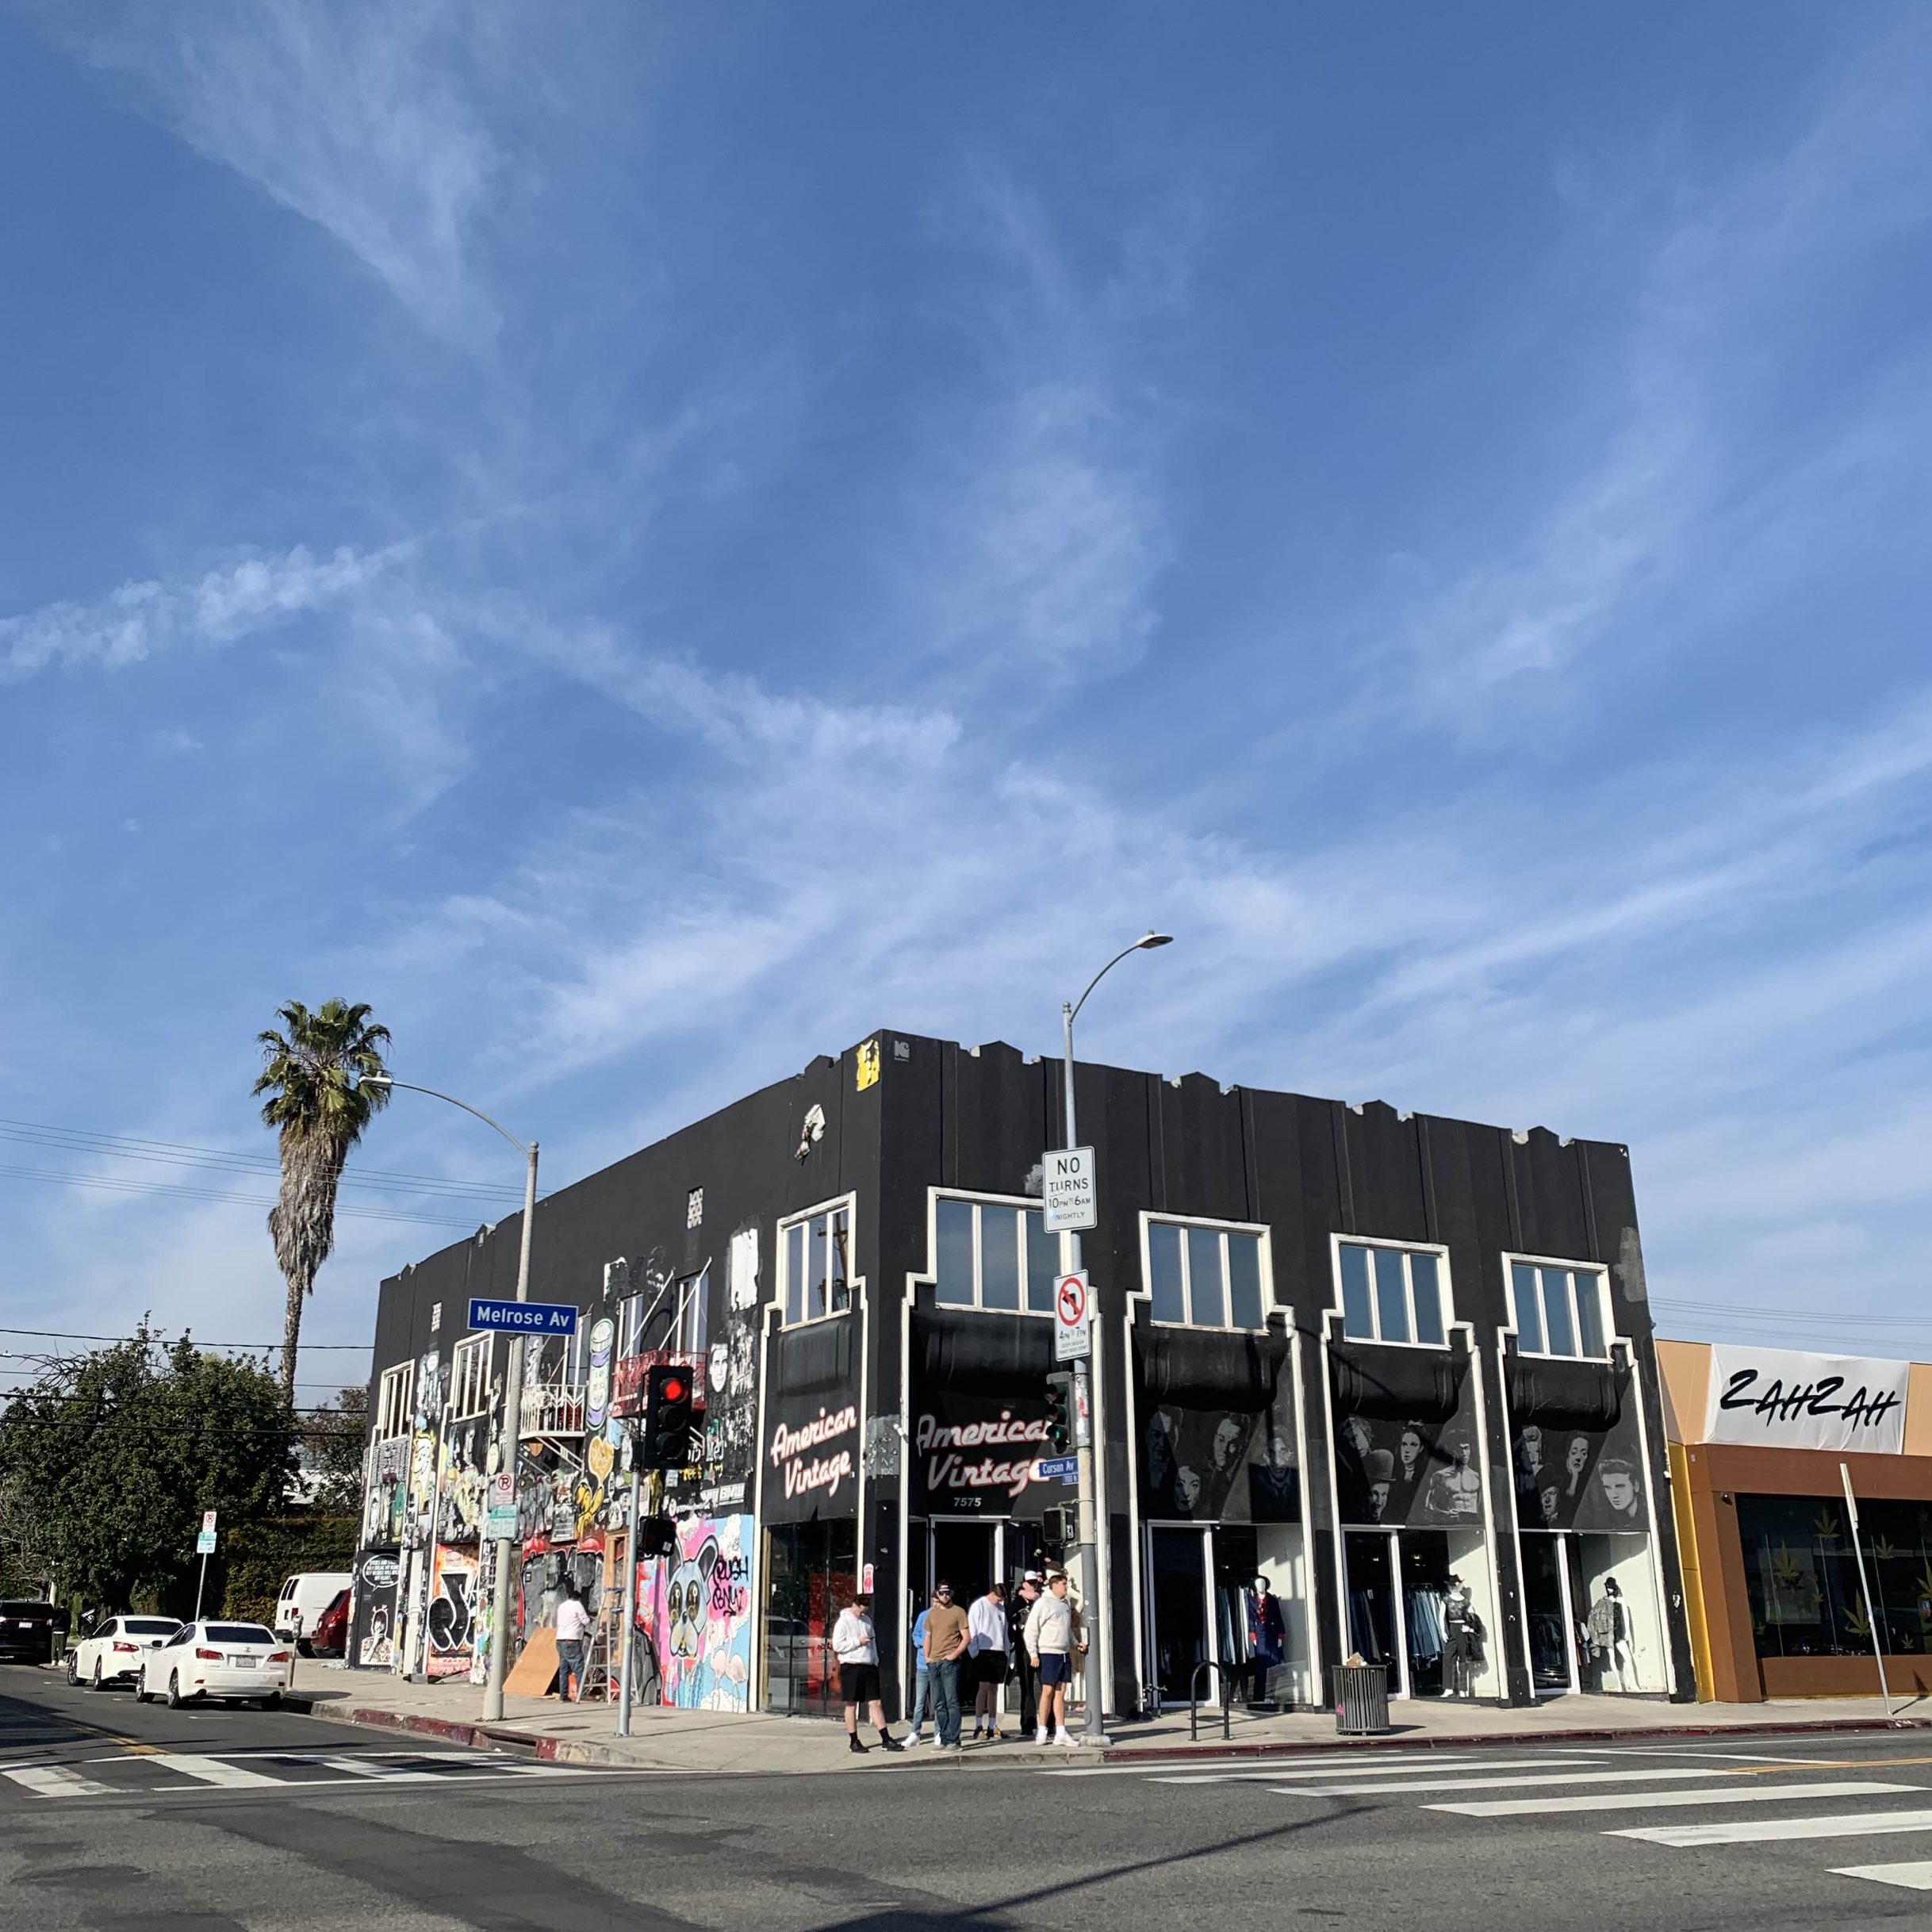 Melrose Avenue in LA | Trip.com Los Angeles